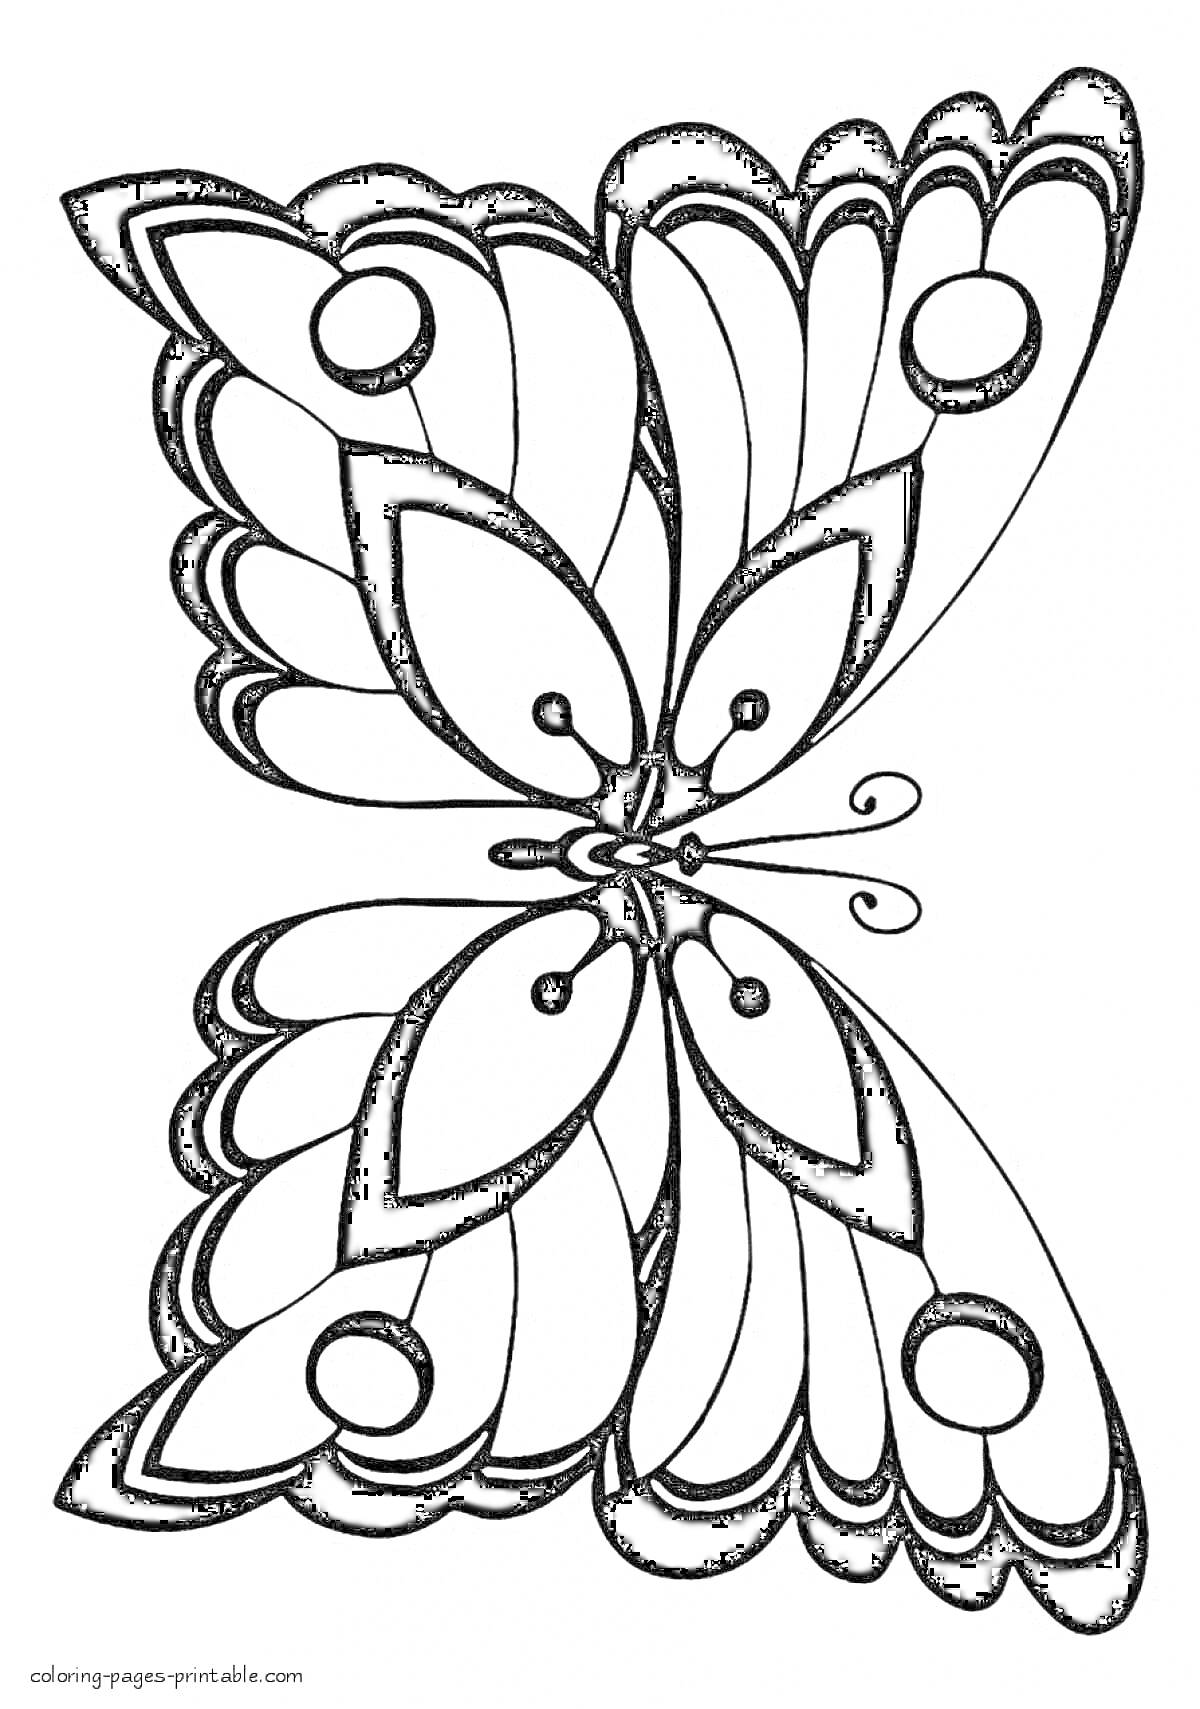 Раскраска Бабочка с узорчатыми крыльями и круглыми элементами